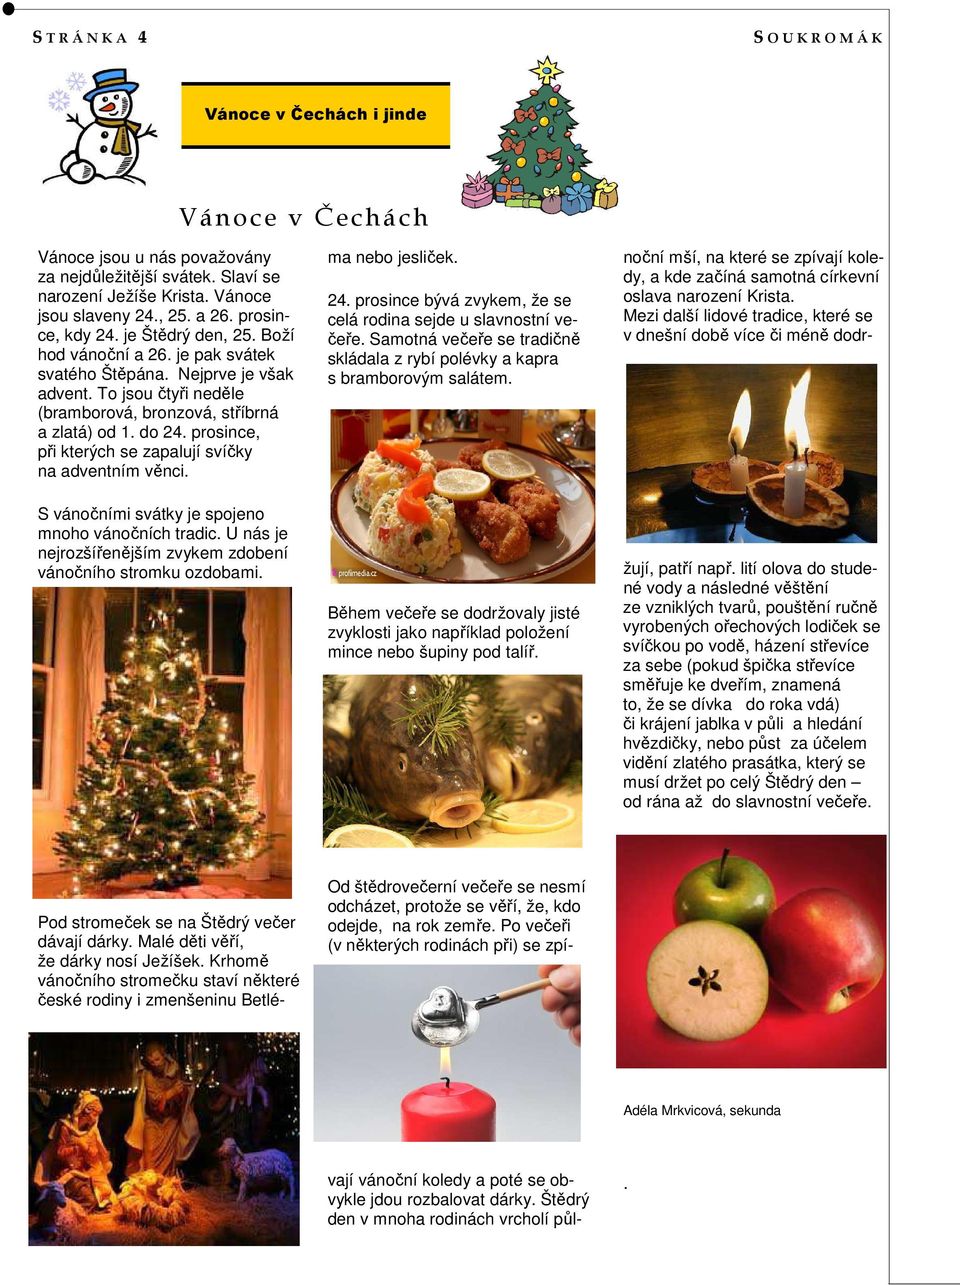 prosince, při kterých se zapalují svíčky na adventním věnci. S vánočními svátky je spojeno mnoho vánočních tradic. U nás je nejrozšířenějším zvykem zdobení vánočního stromku ozdobami.